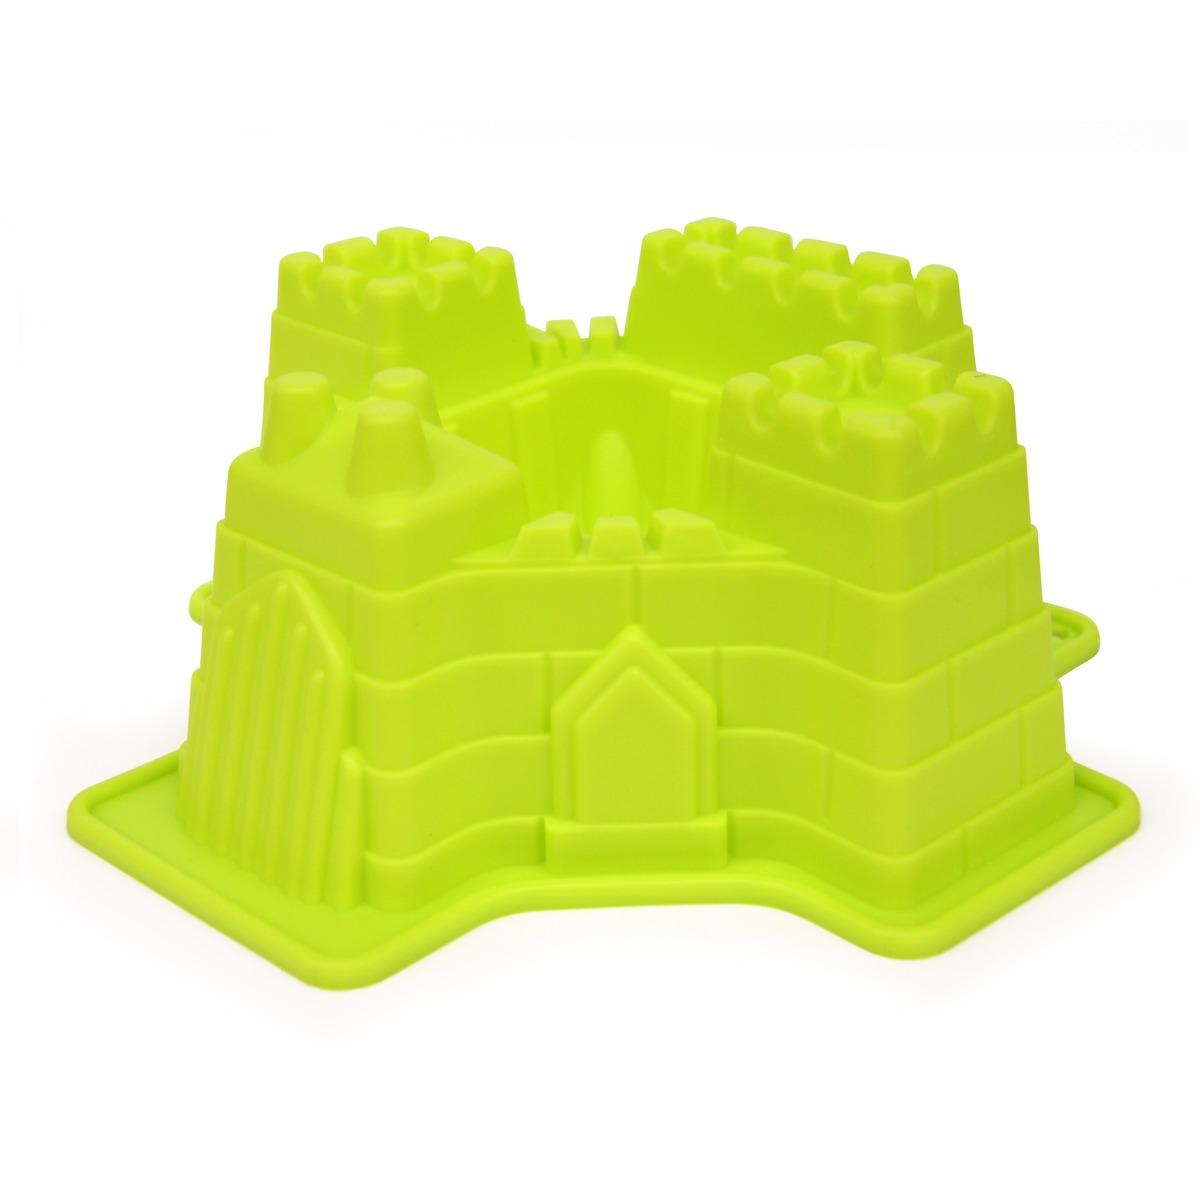 Moule à gâteau en forme de château fort - Antiadhésif - 21 x 20 x 8 cm - Vert